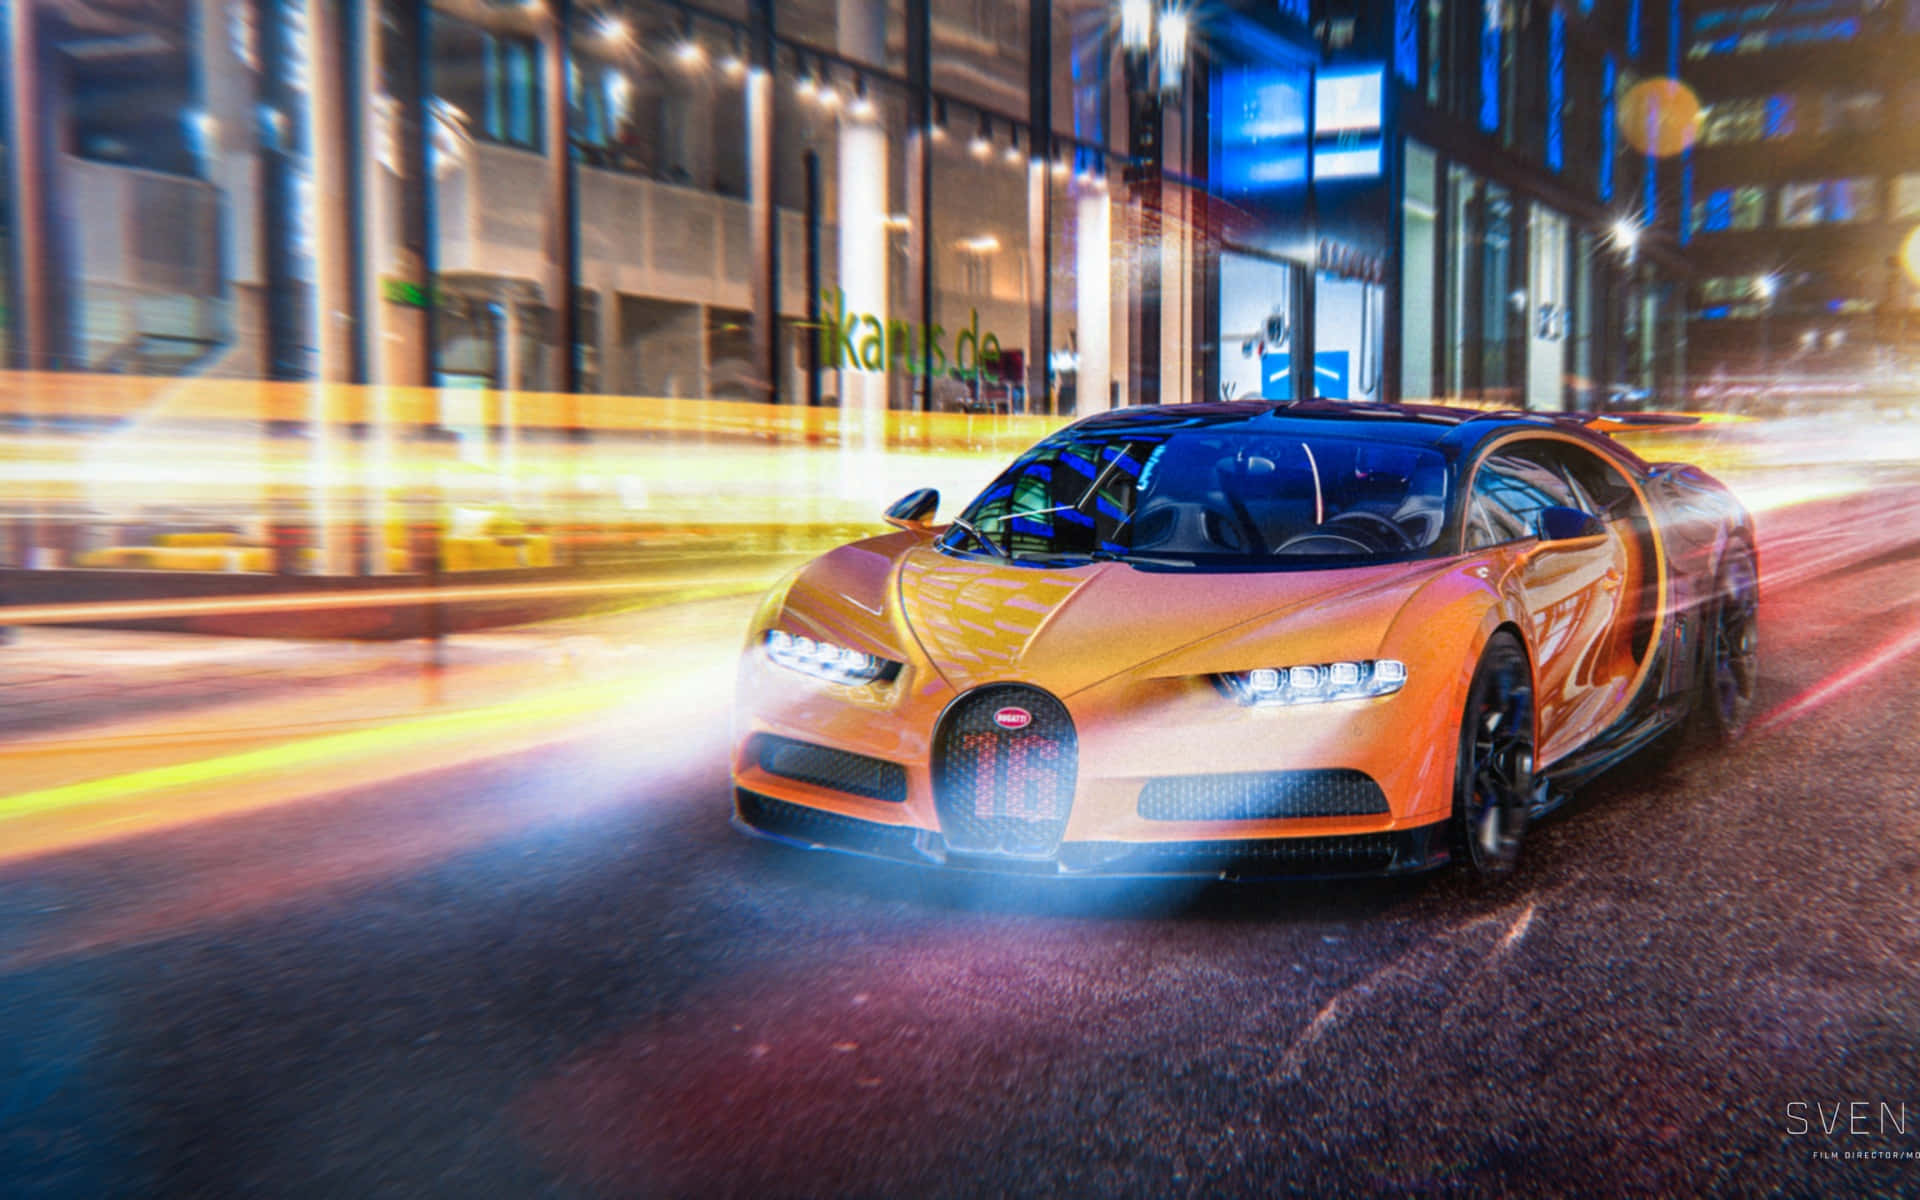 Take a ride in this Luxurious Bugatti car Wallpaper